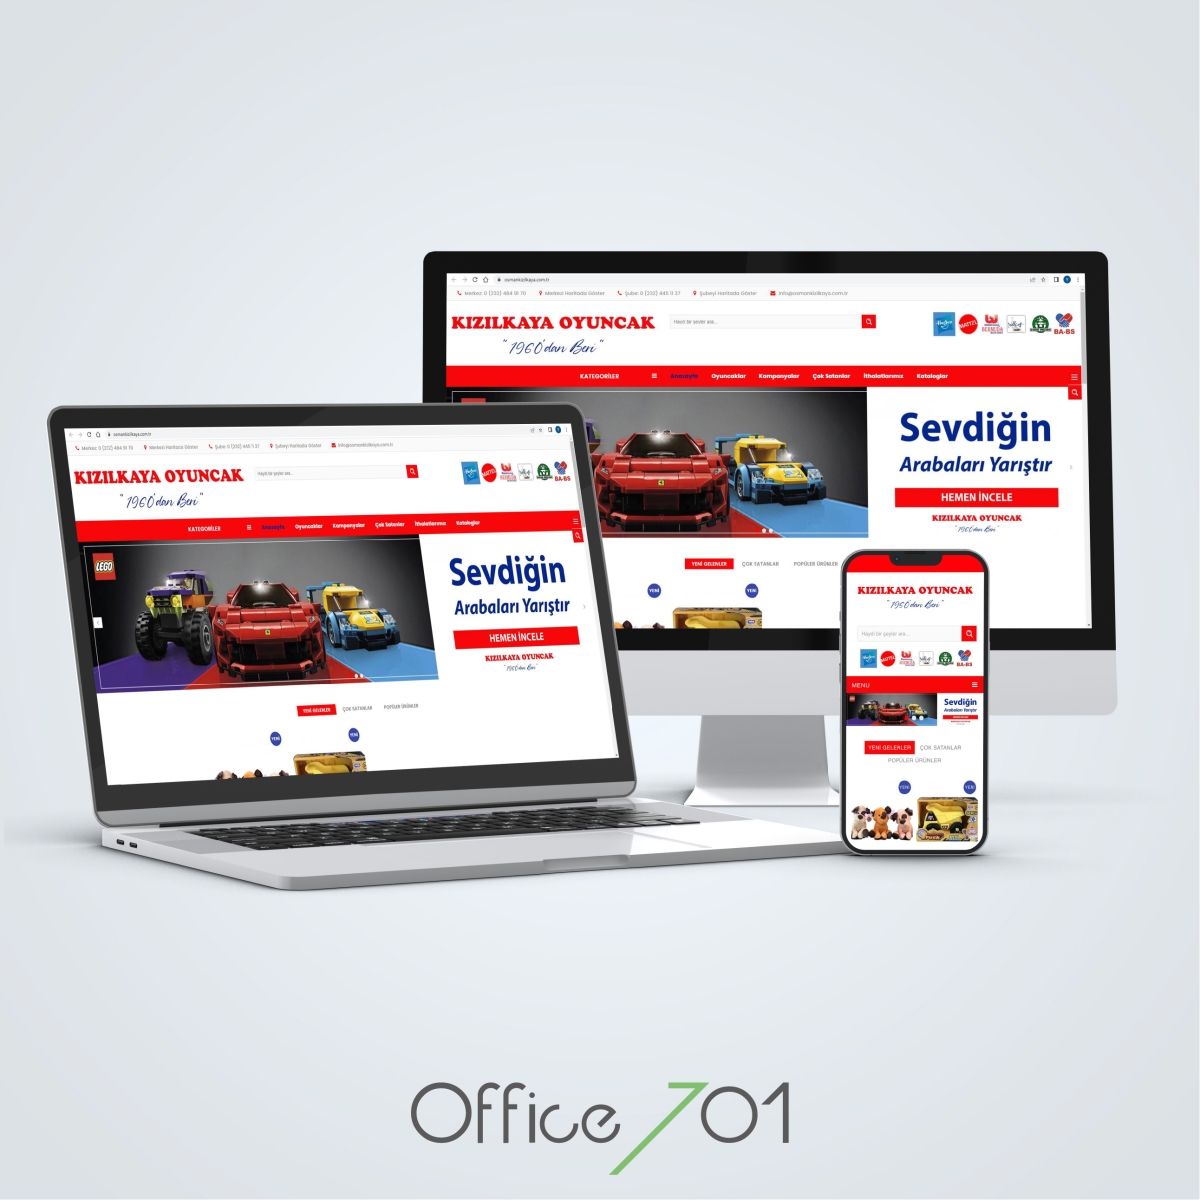 Office701 | Kızılkaya Oyuncak | Retail Website